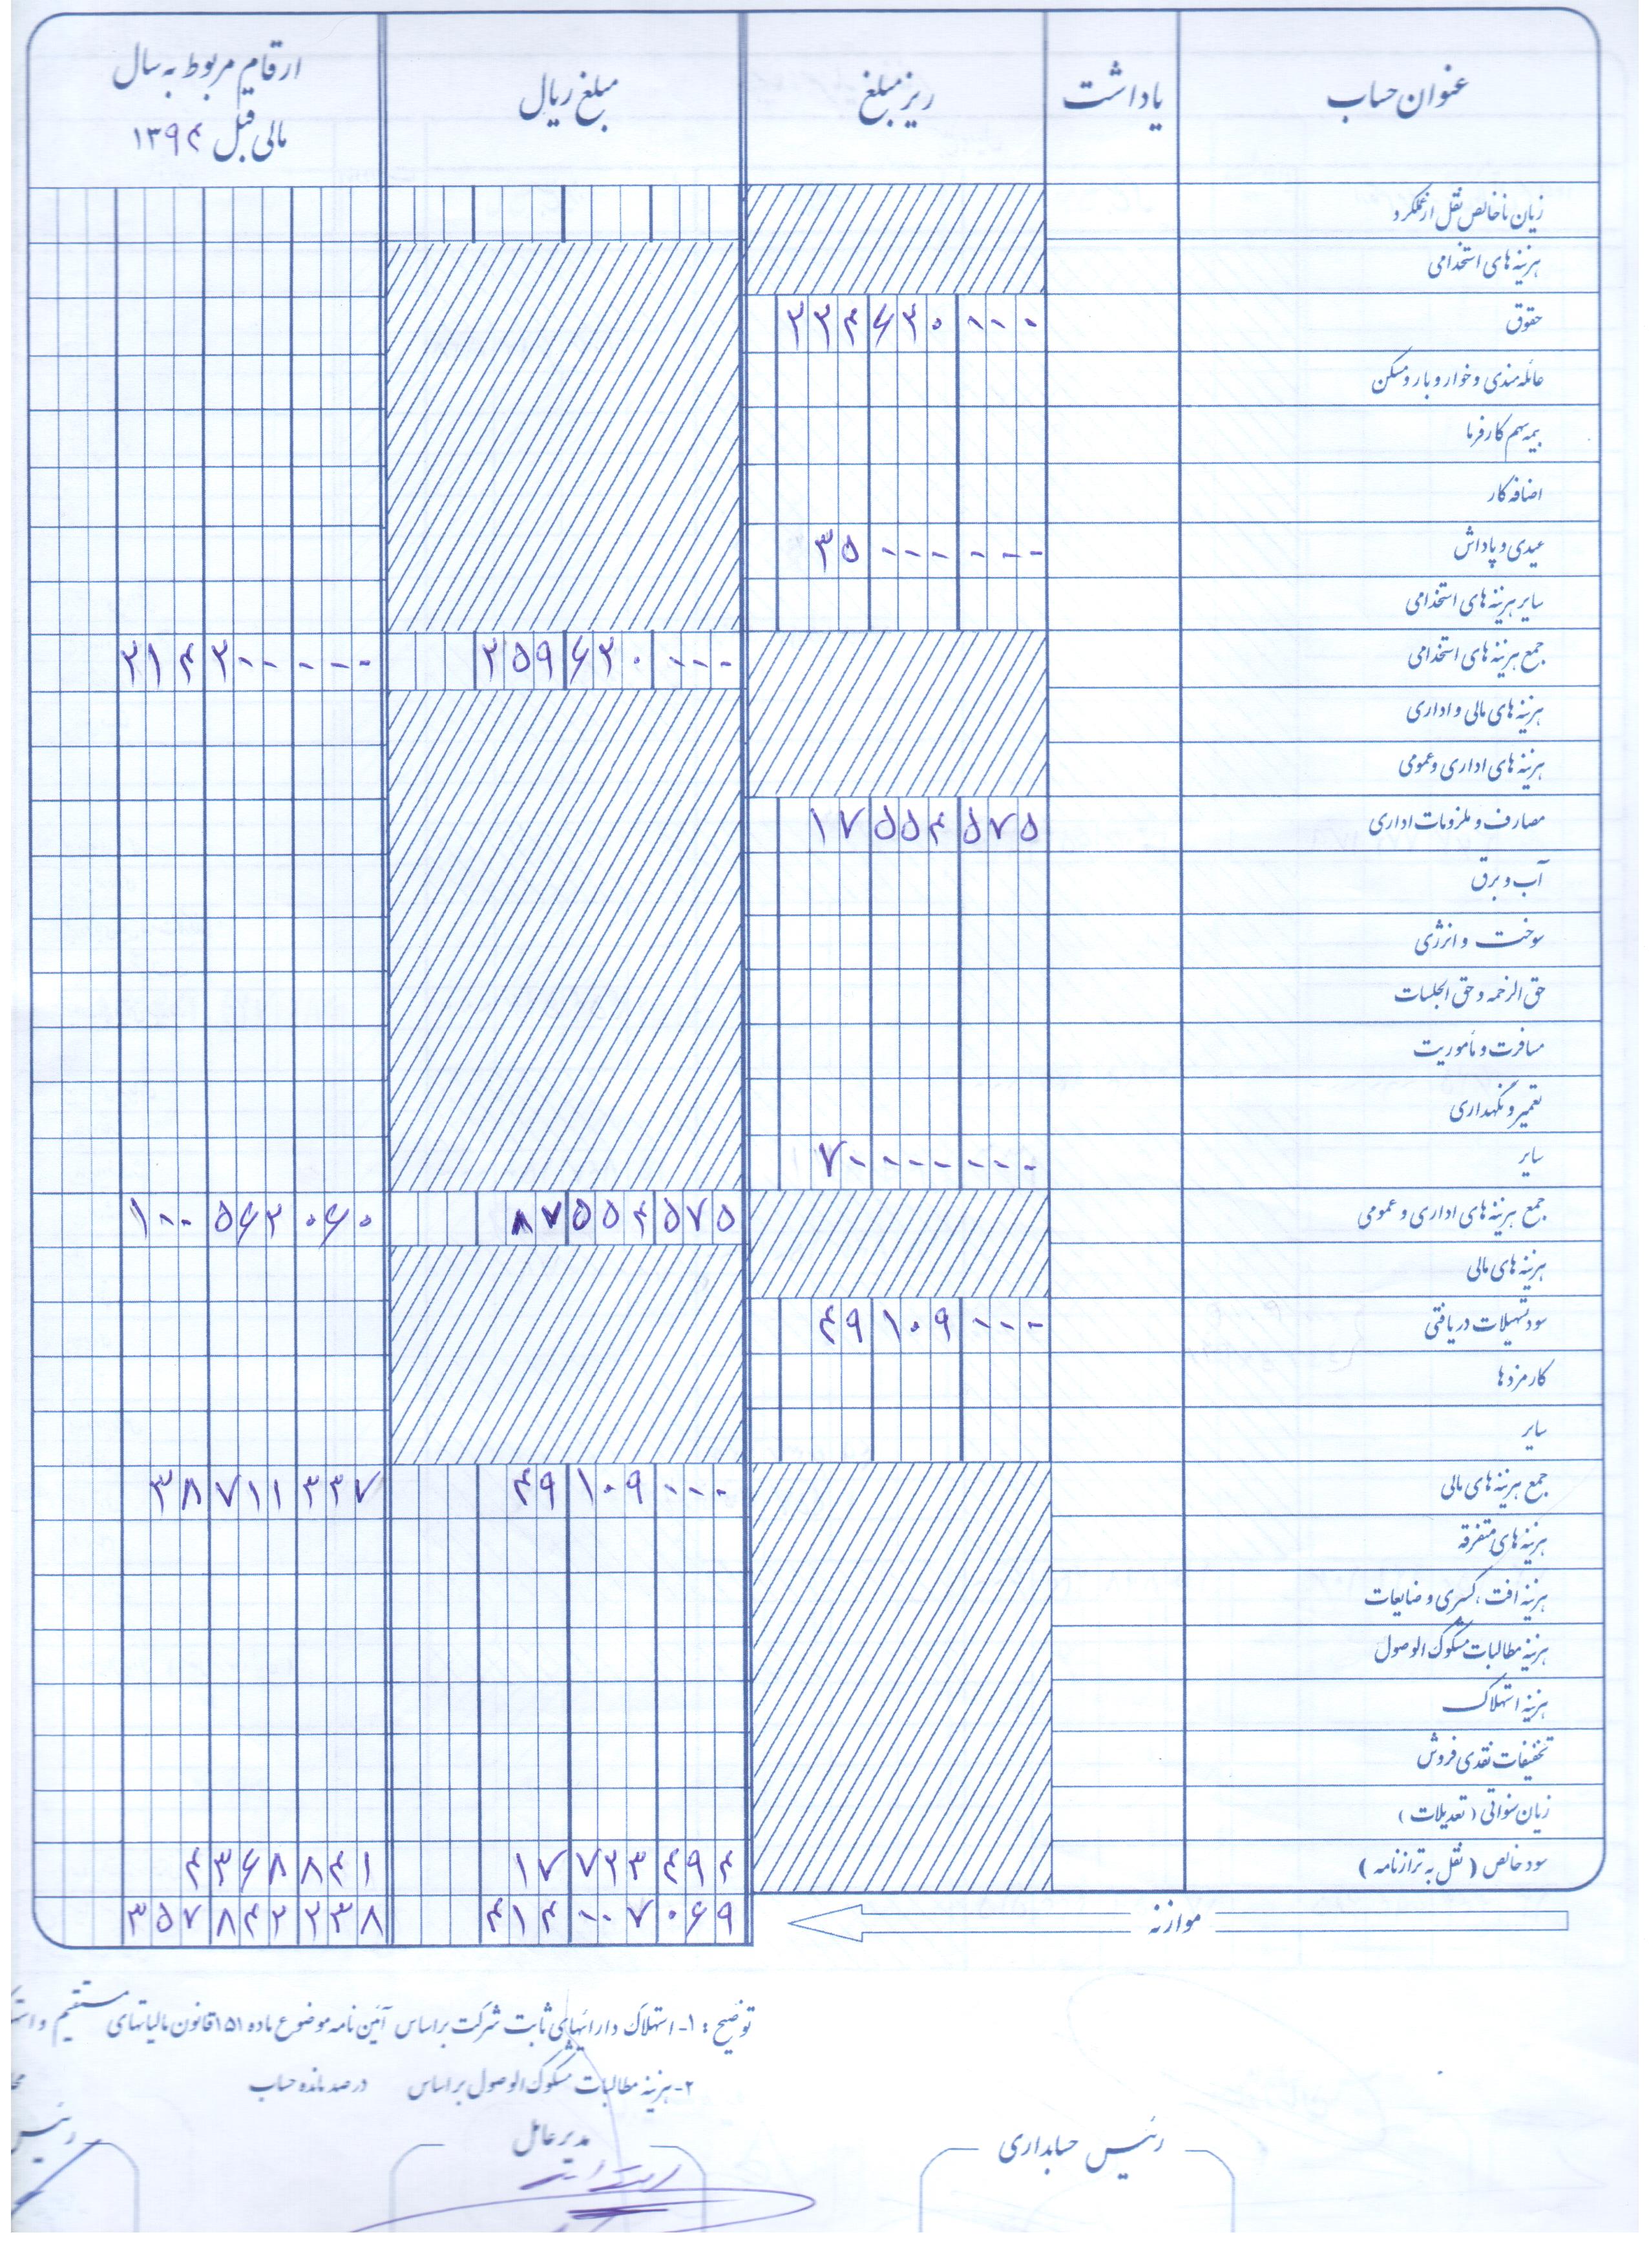 صورت حساب های مالی شرکت تعاونی اعتبار کارکنان بهزیستی استان اصفهان